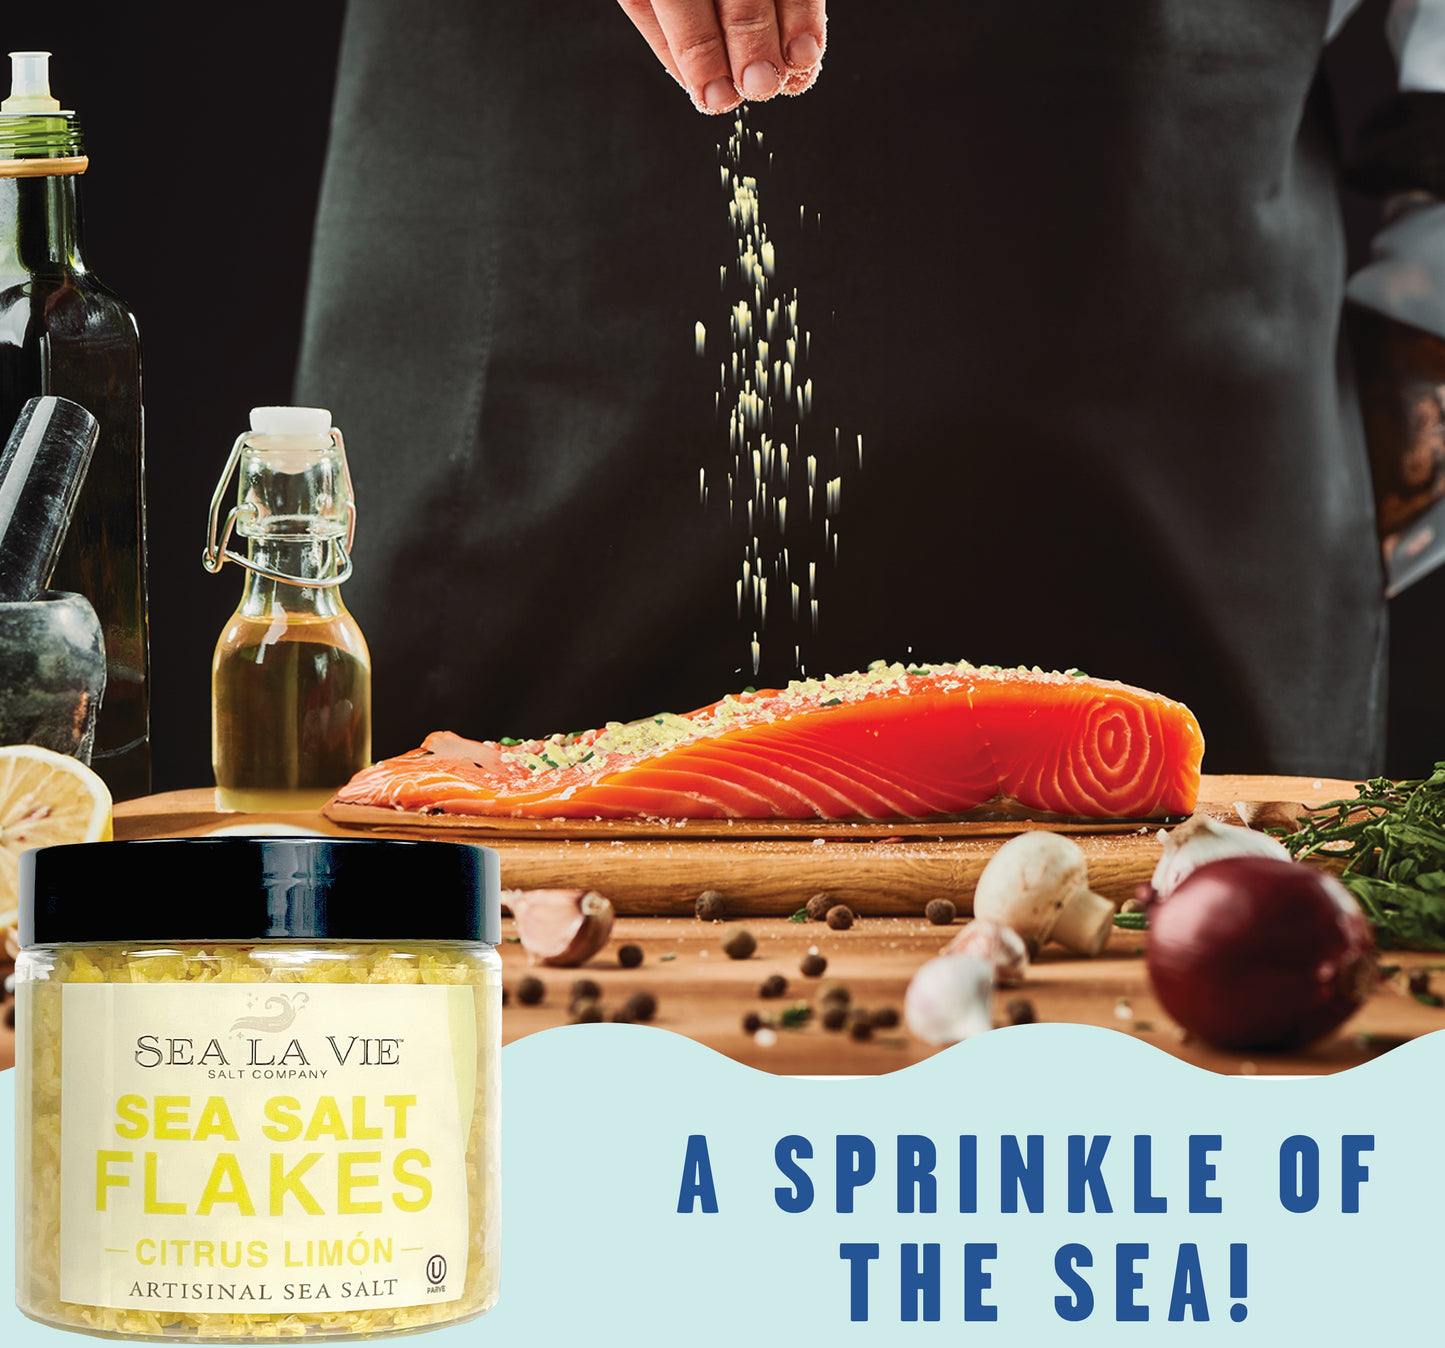 Gourmet Sea Salt Flakes | Citrus | Sea La Vie | 3.5 oz